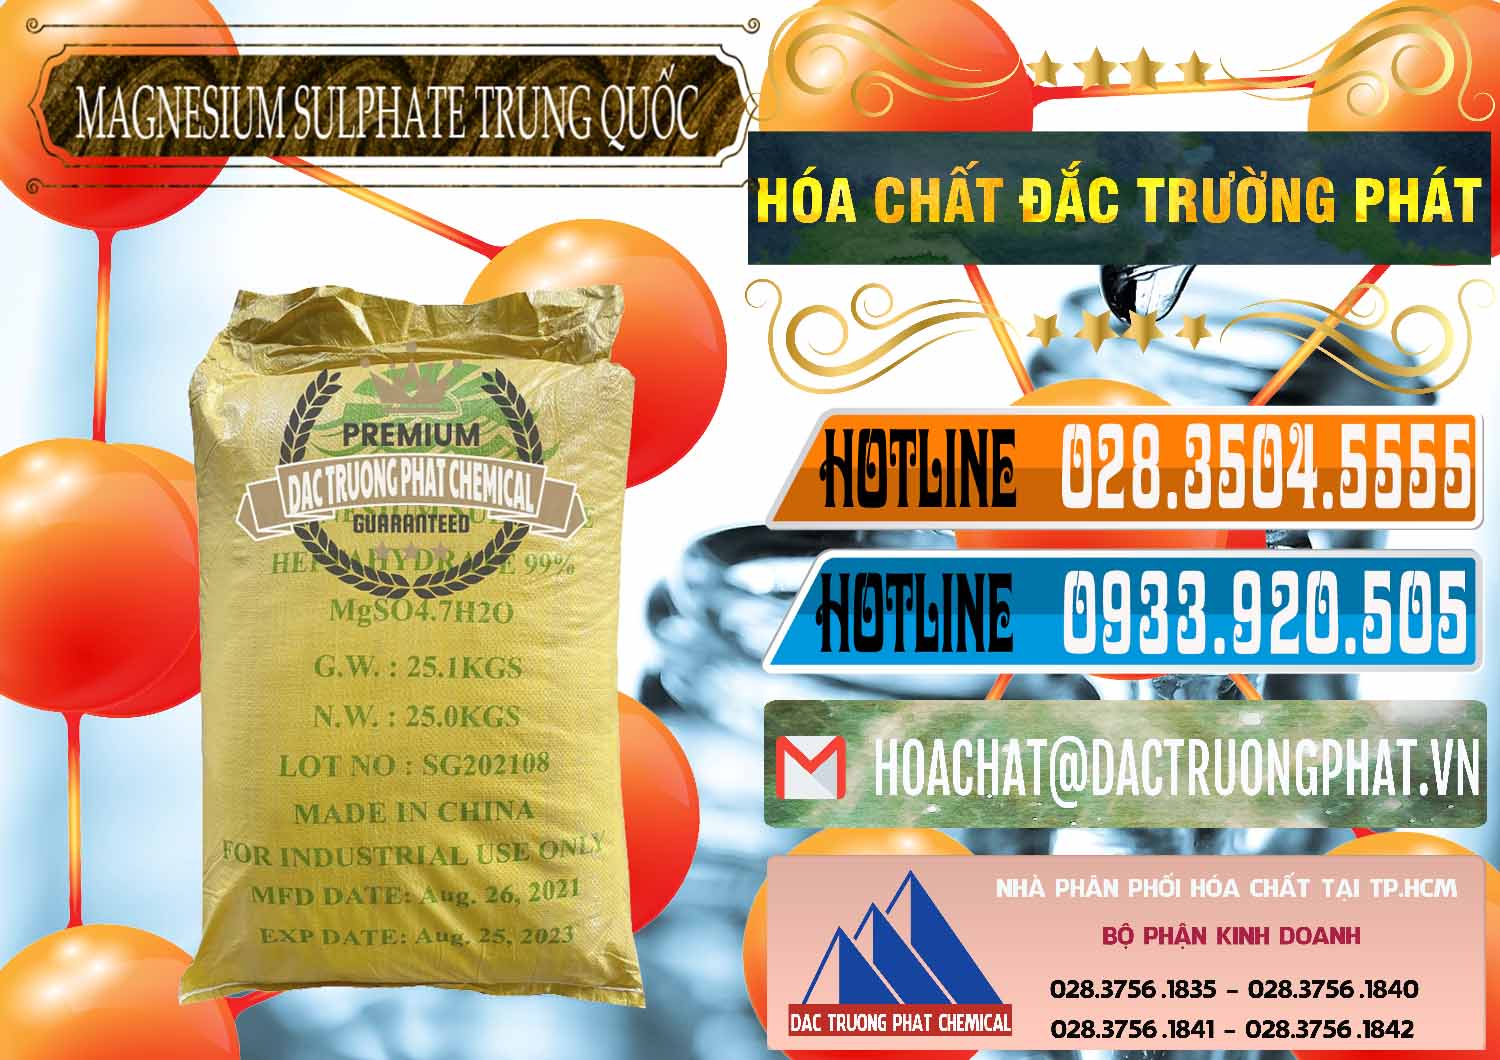 Nơi bán - phân phối MGSO4.7H2O – Magnesium Sulphate Heptahydrate 99% Trung Quốc China - 0440 - Cty cung cấp & bán hóa chất tại TP.HCM - stmp.net